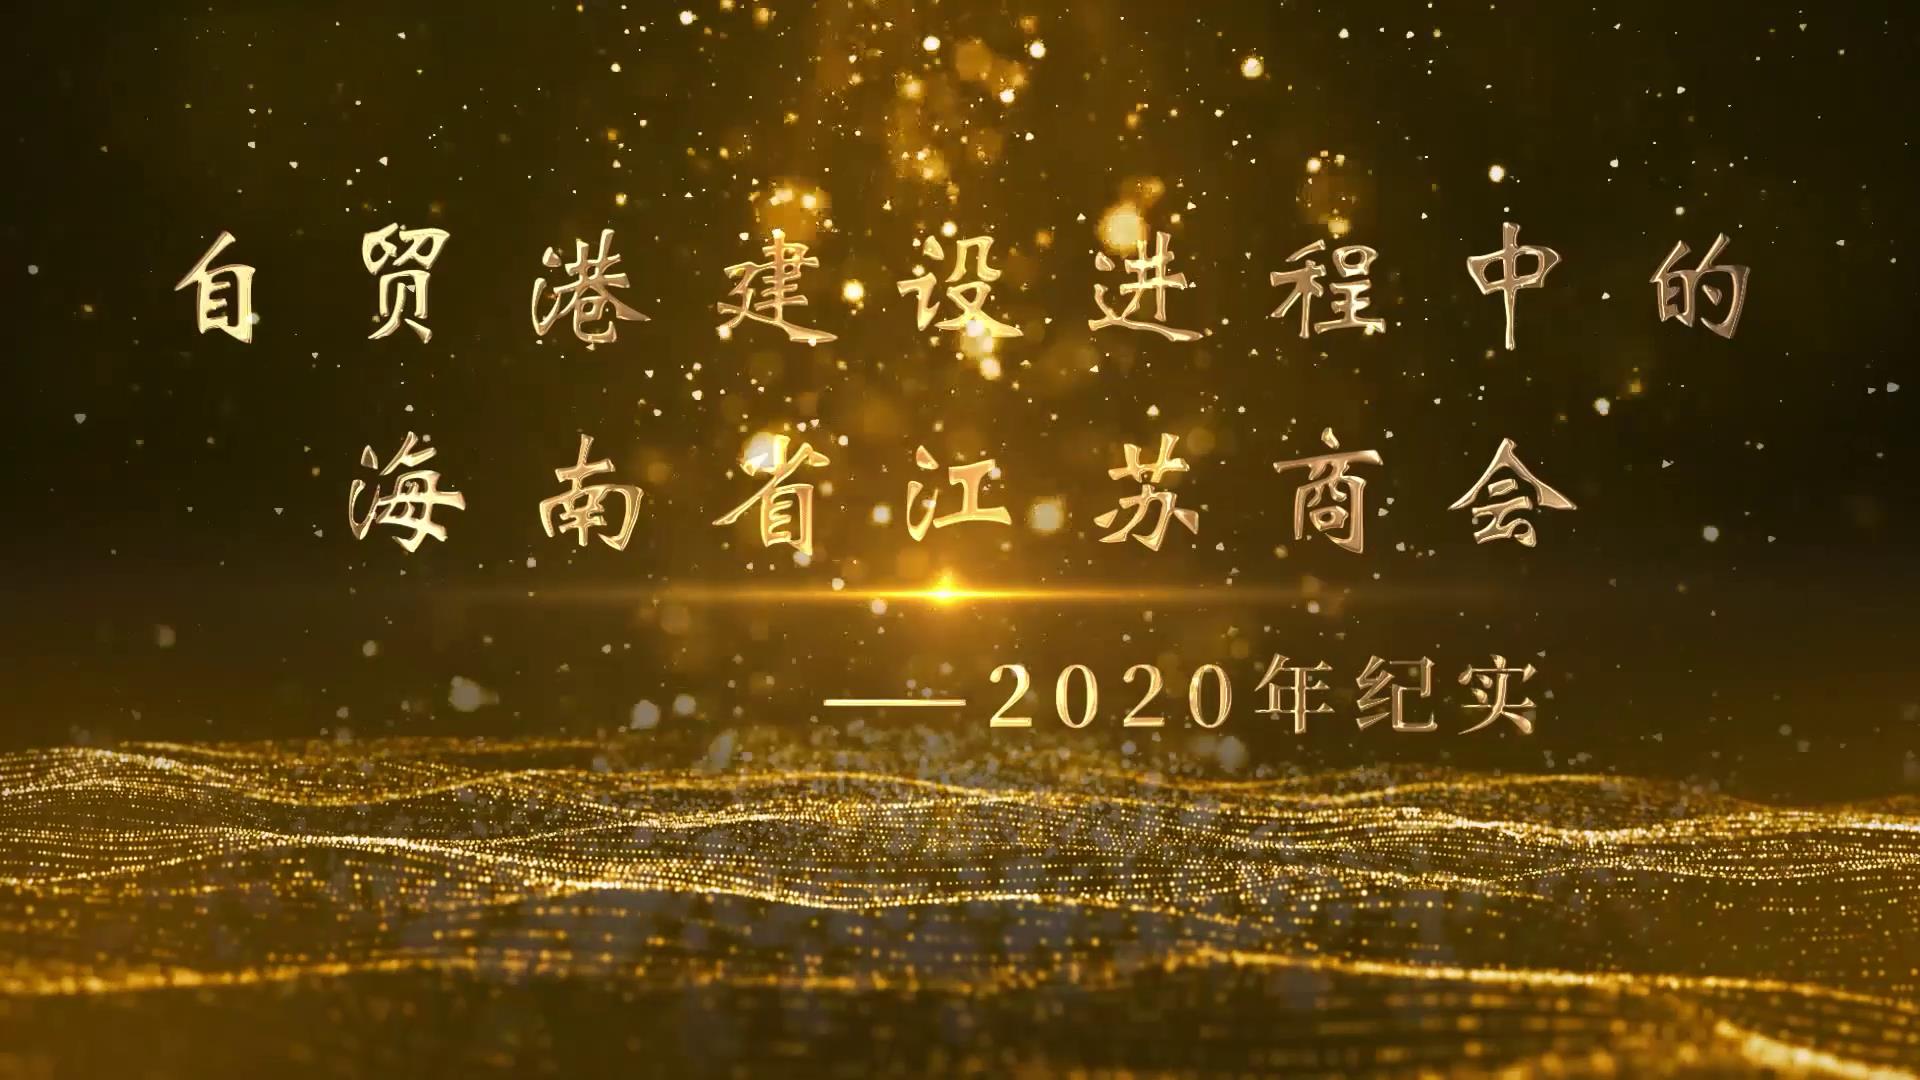 自由贸易港建设进程中的海南省江苏商会----2020年纪实（2021·1）